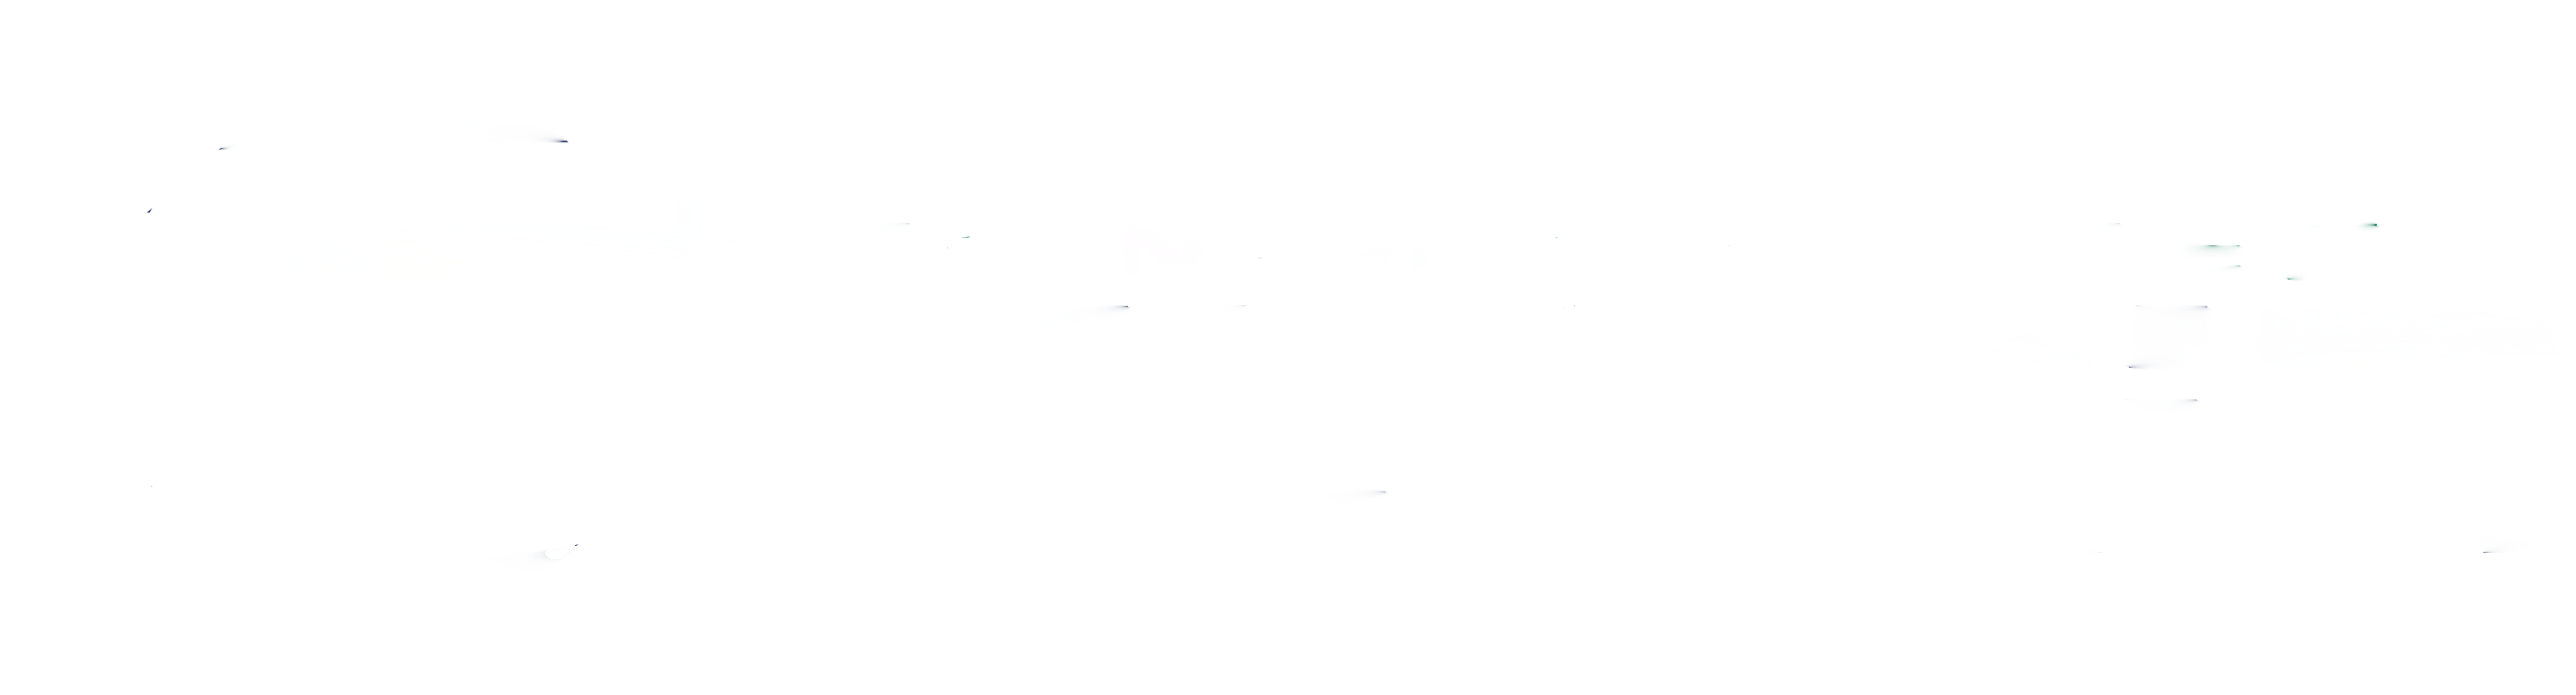 Logo Transporte Coletivo Glória